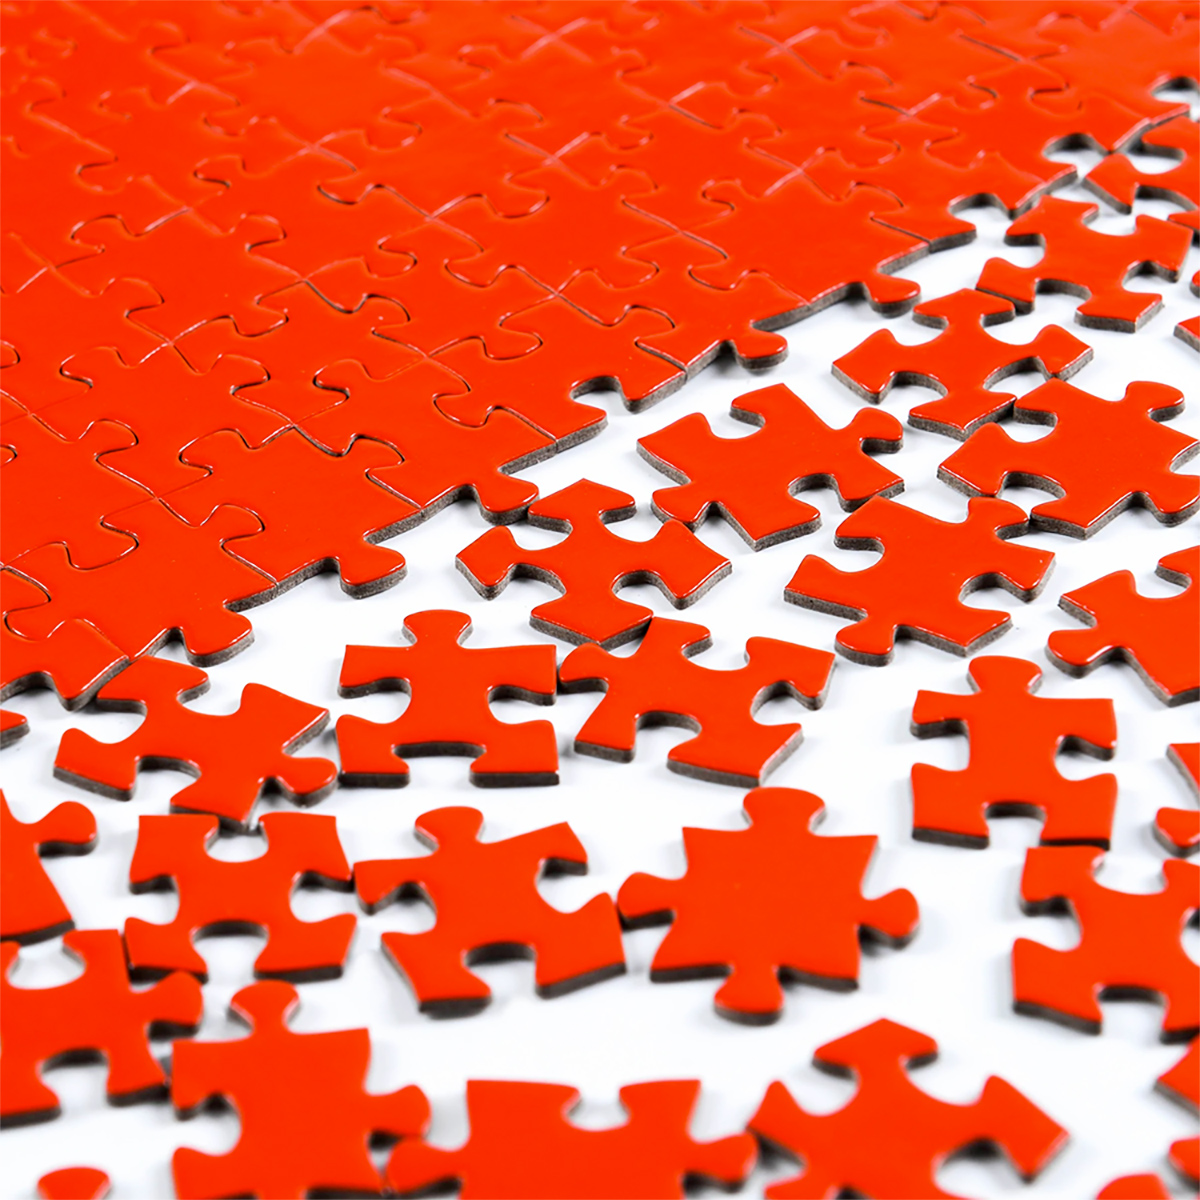 CHengQiSM 1000 Peça Jigsaw Quebra-cabeça Em branco Quebra-cabeça